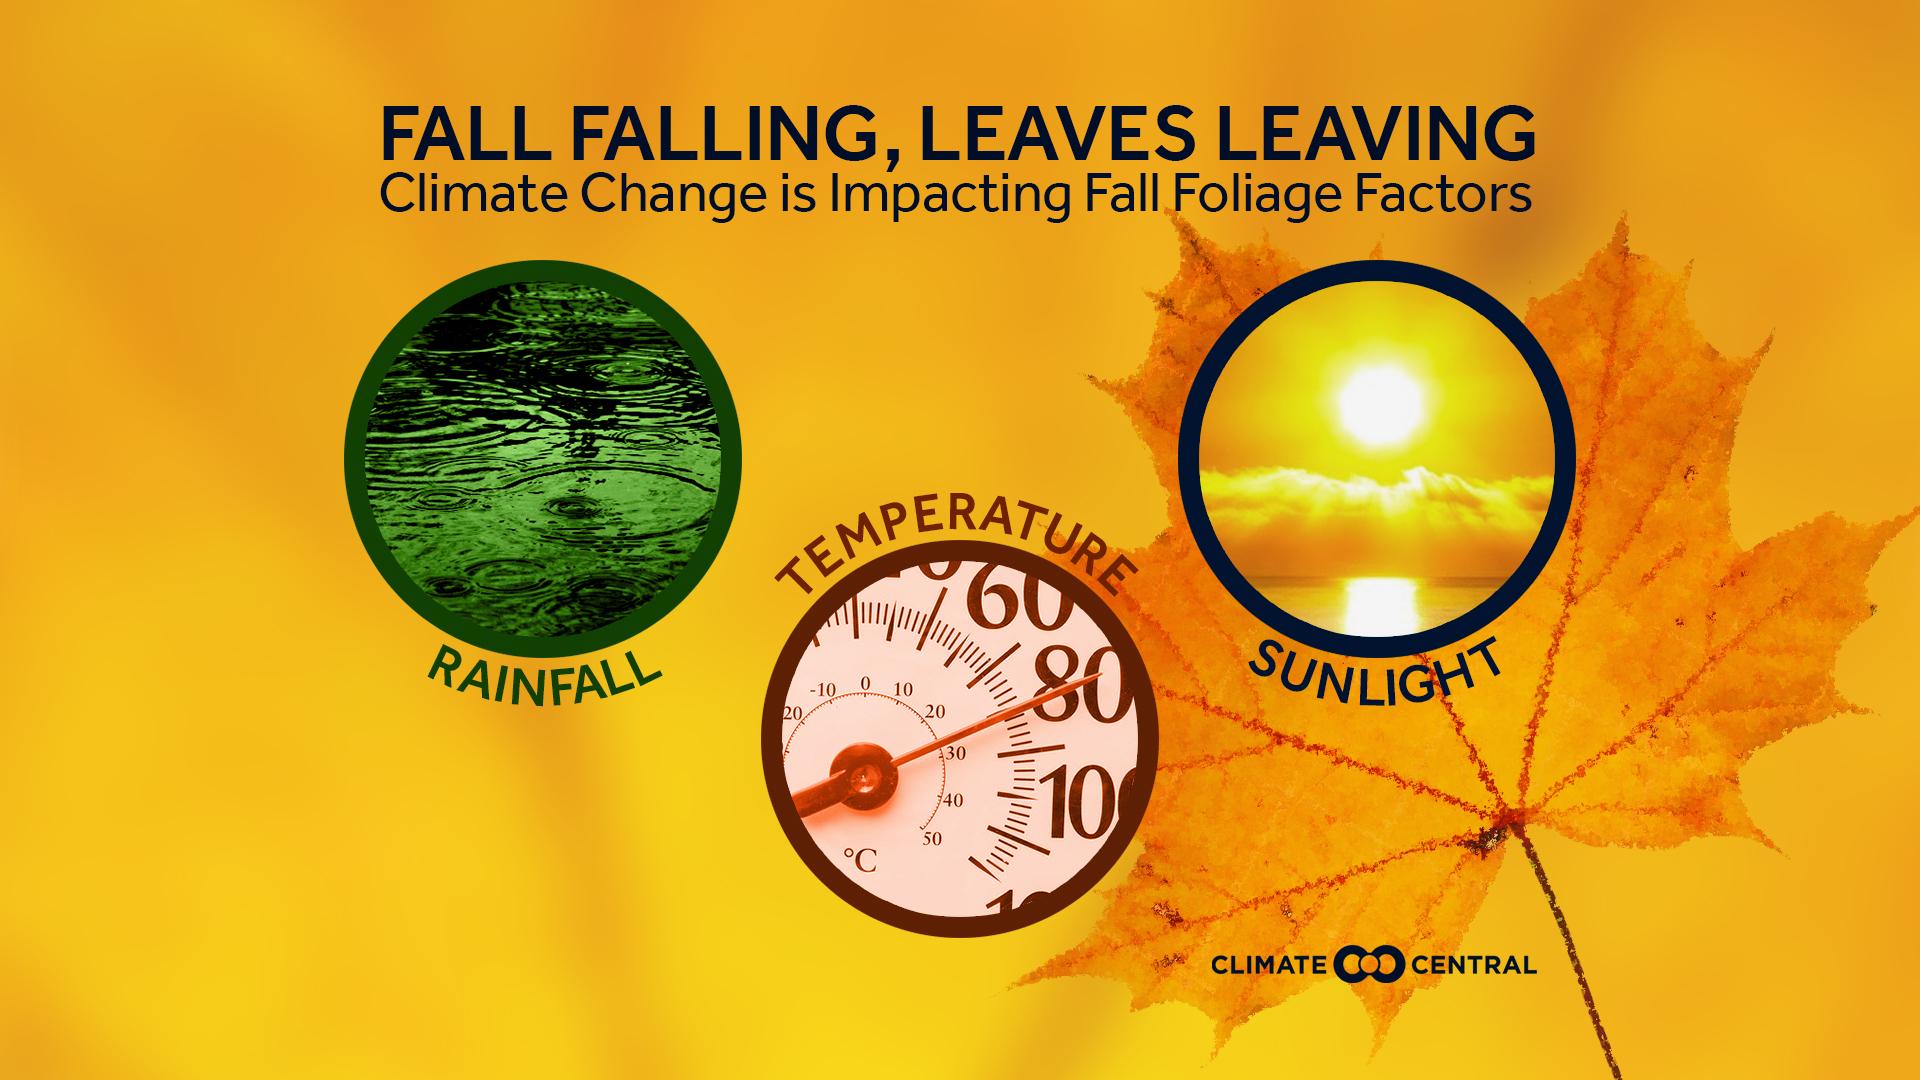 Set 1 - Fall Foliage & Climate Change